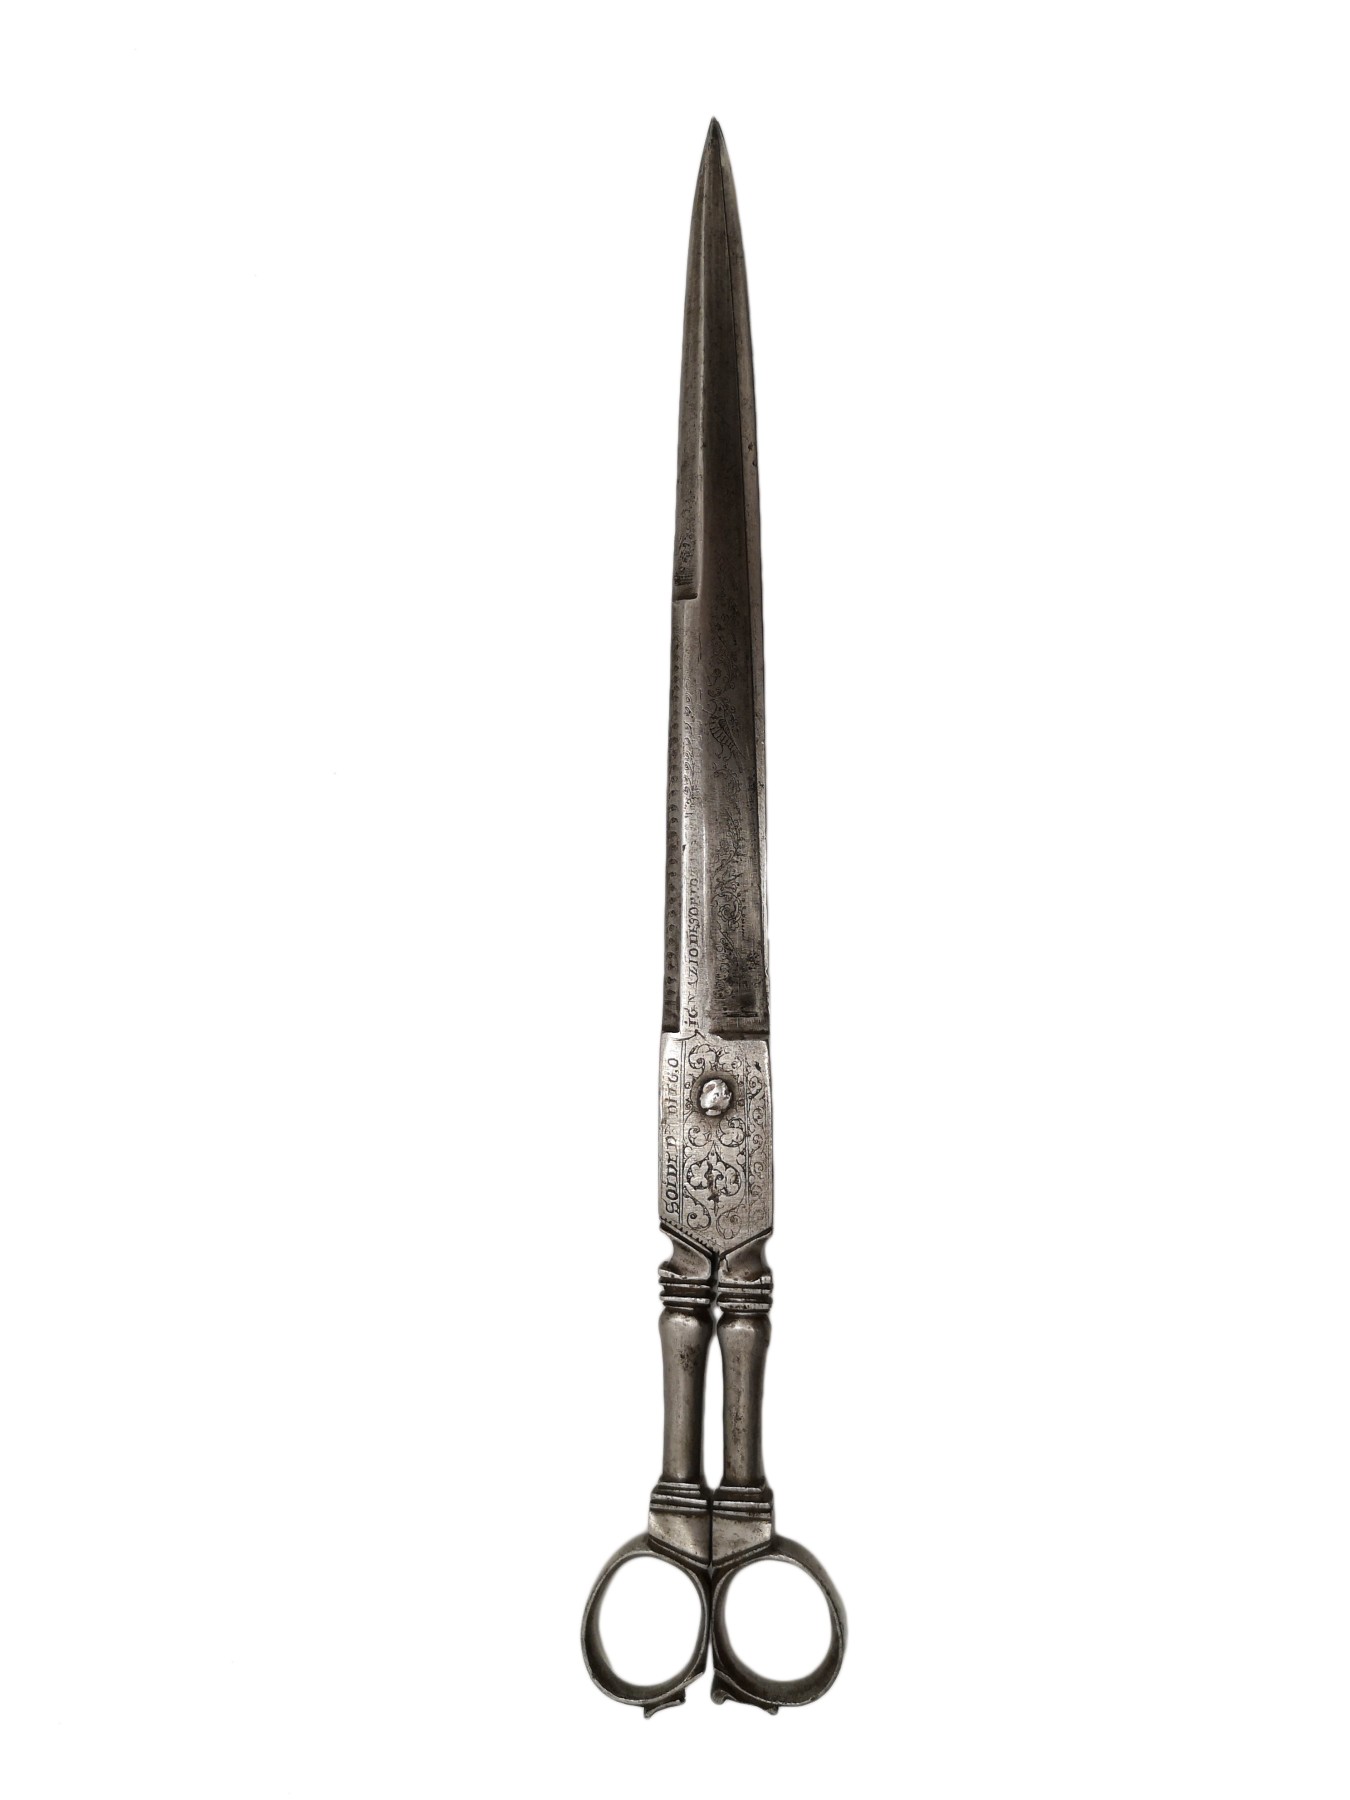 Paire de ciseaux en fer forgé et gravé, Espagne 1692 - XVIIe siècle -  N.78746